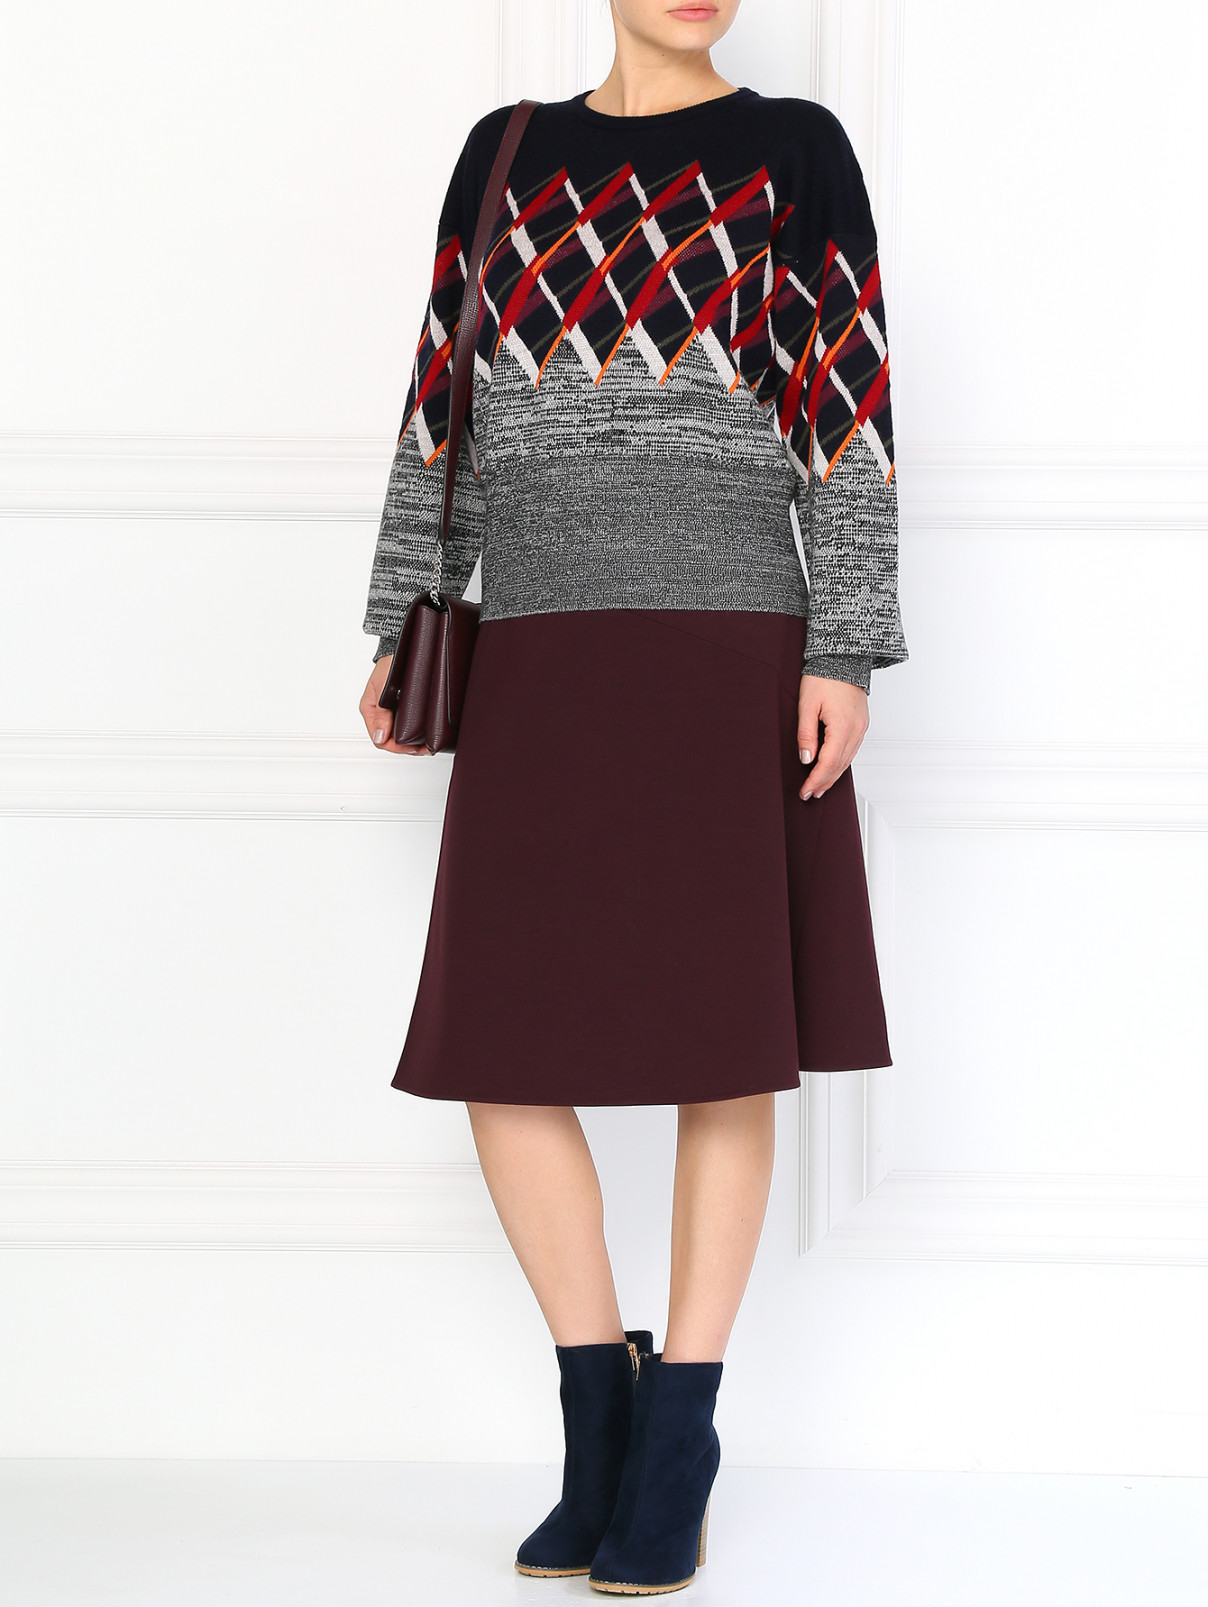 Шерстяная юбка-полусолнце с запахом Jil Sander  –  Модель Общий вид  – Цвет:  Красный